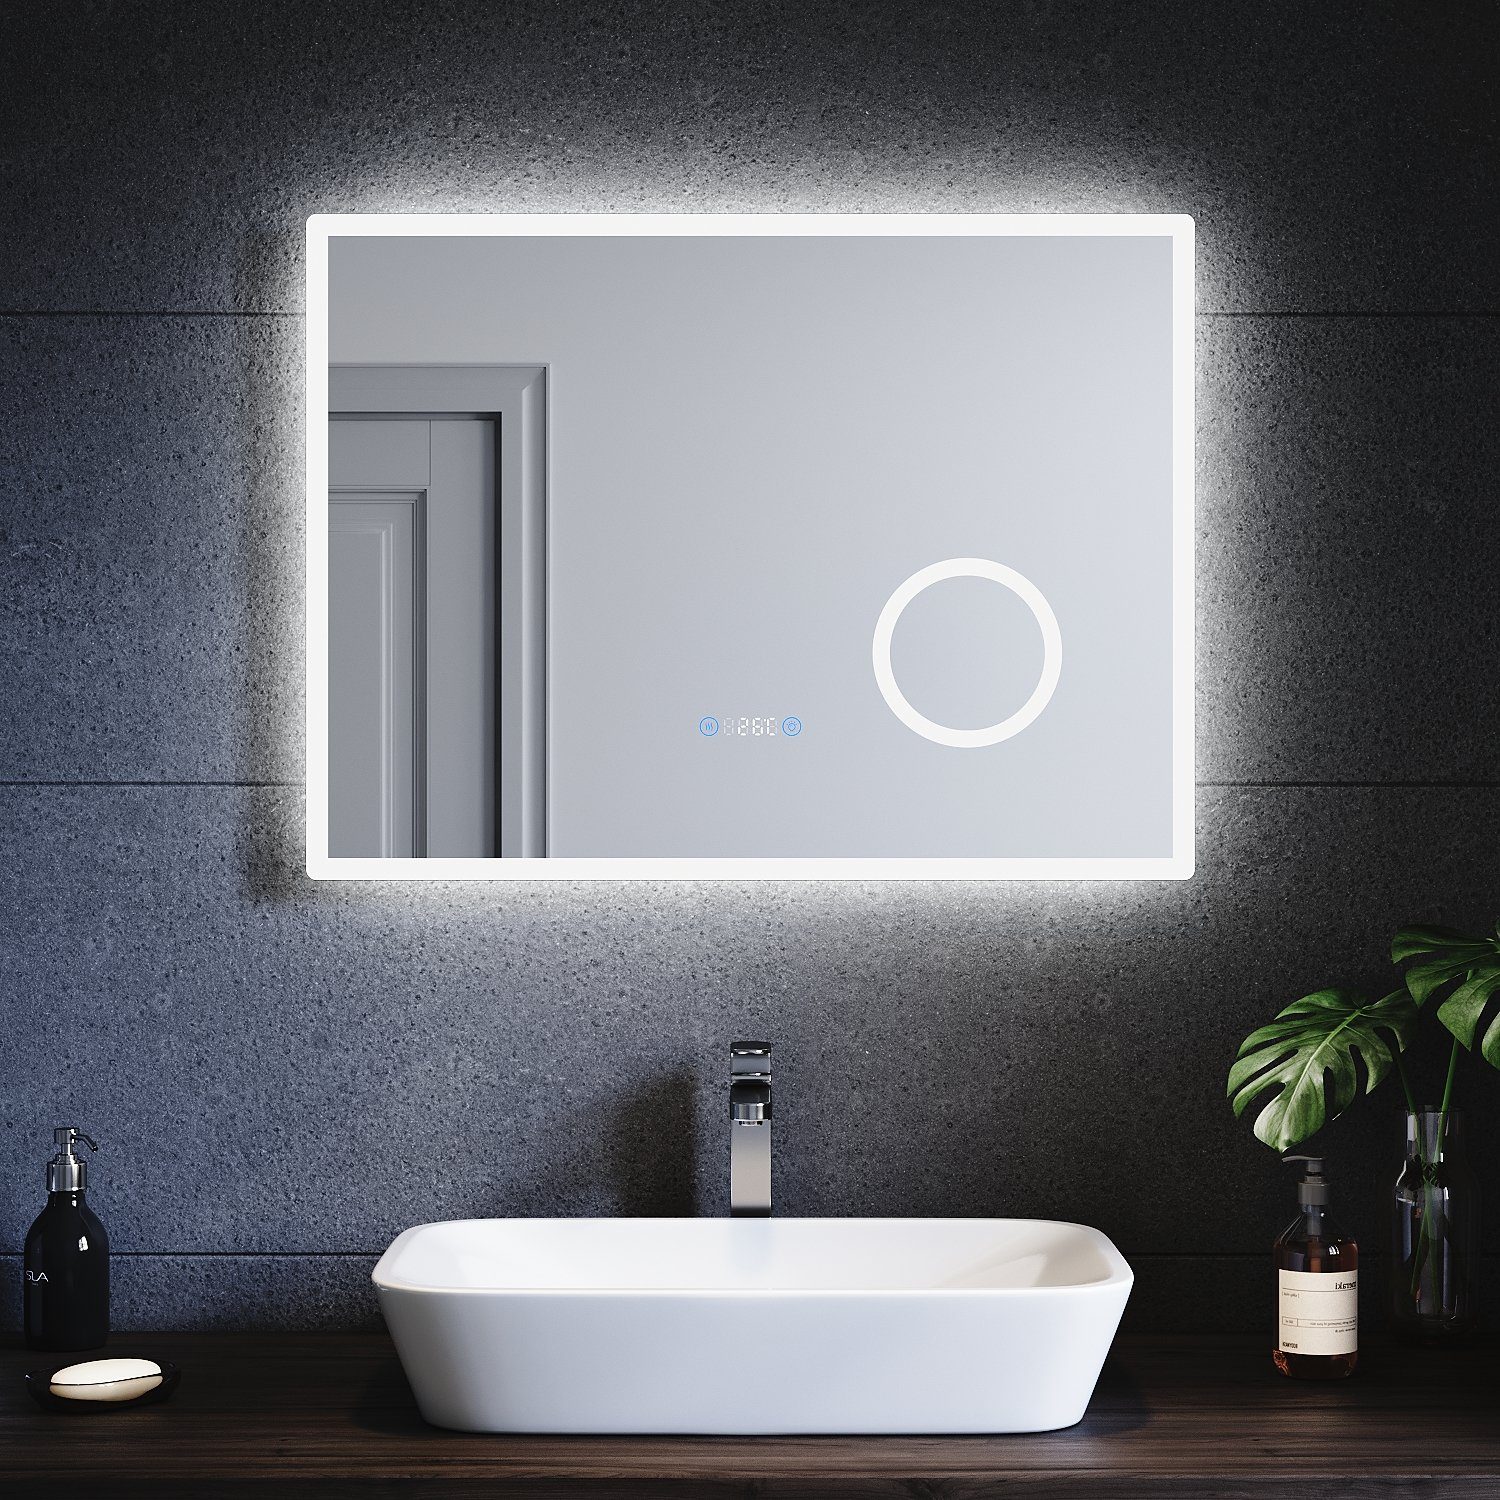 SONNI Badspiegel Badspiegel mit Beleuchtung kaltweiß, 3-facher Vergrößerung, Touch, Uhr, Temperatur, Beschlagfrei, Helligkeit einstellbar, Badezimmer, IP44